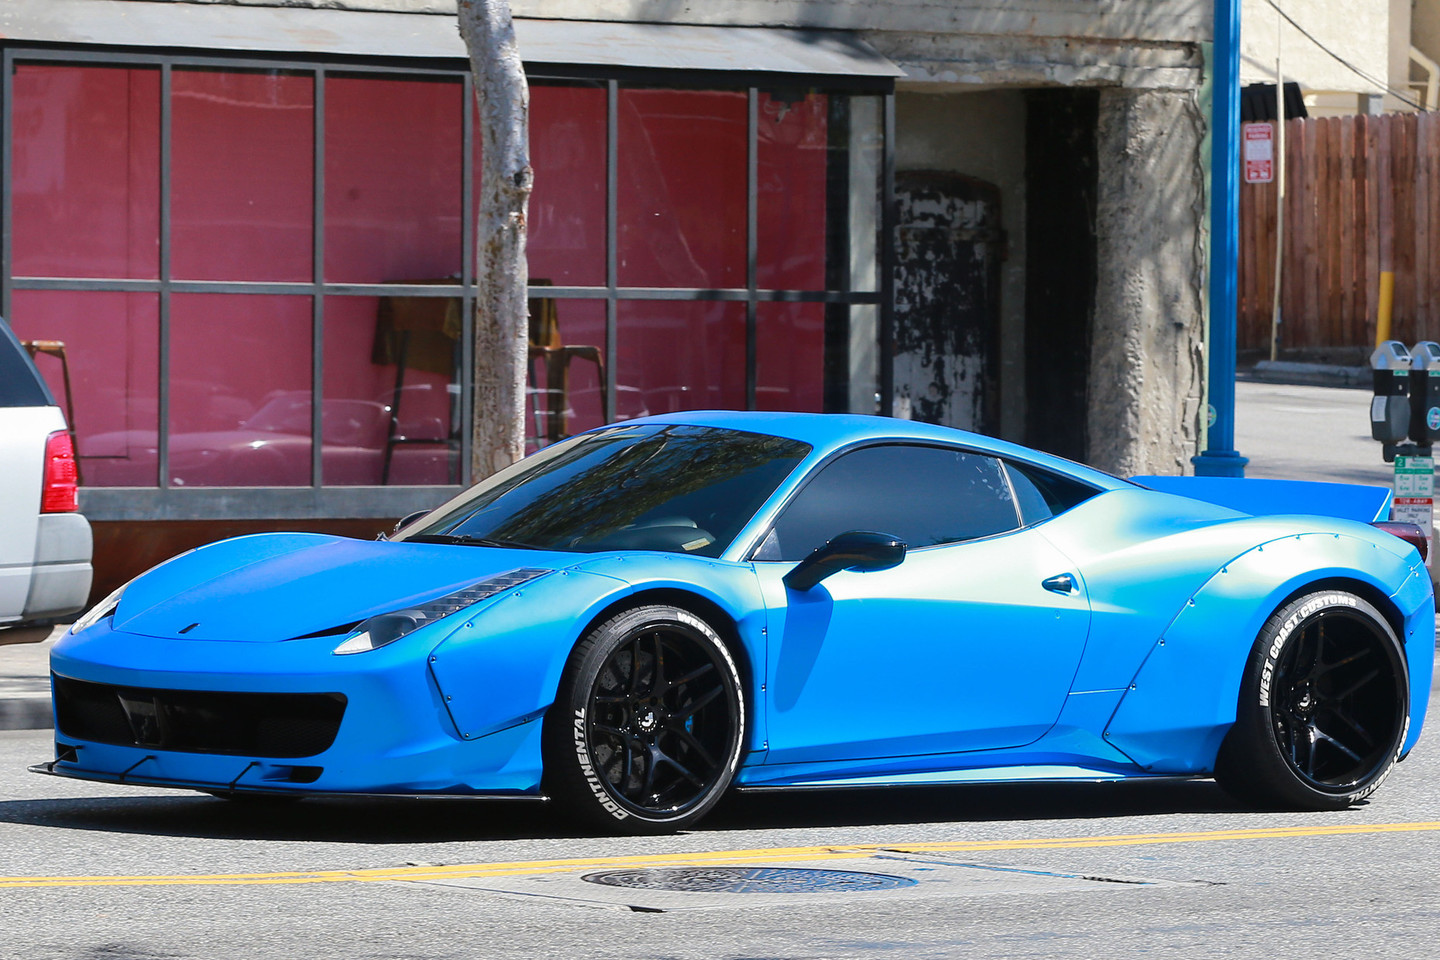 J.Bieberis parduoda savo ryškiai mėlyną „Ferrari“.<br>VidaPress nuotr.